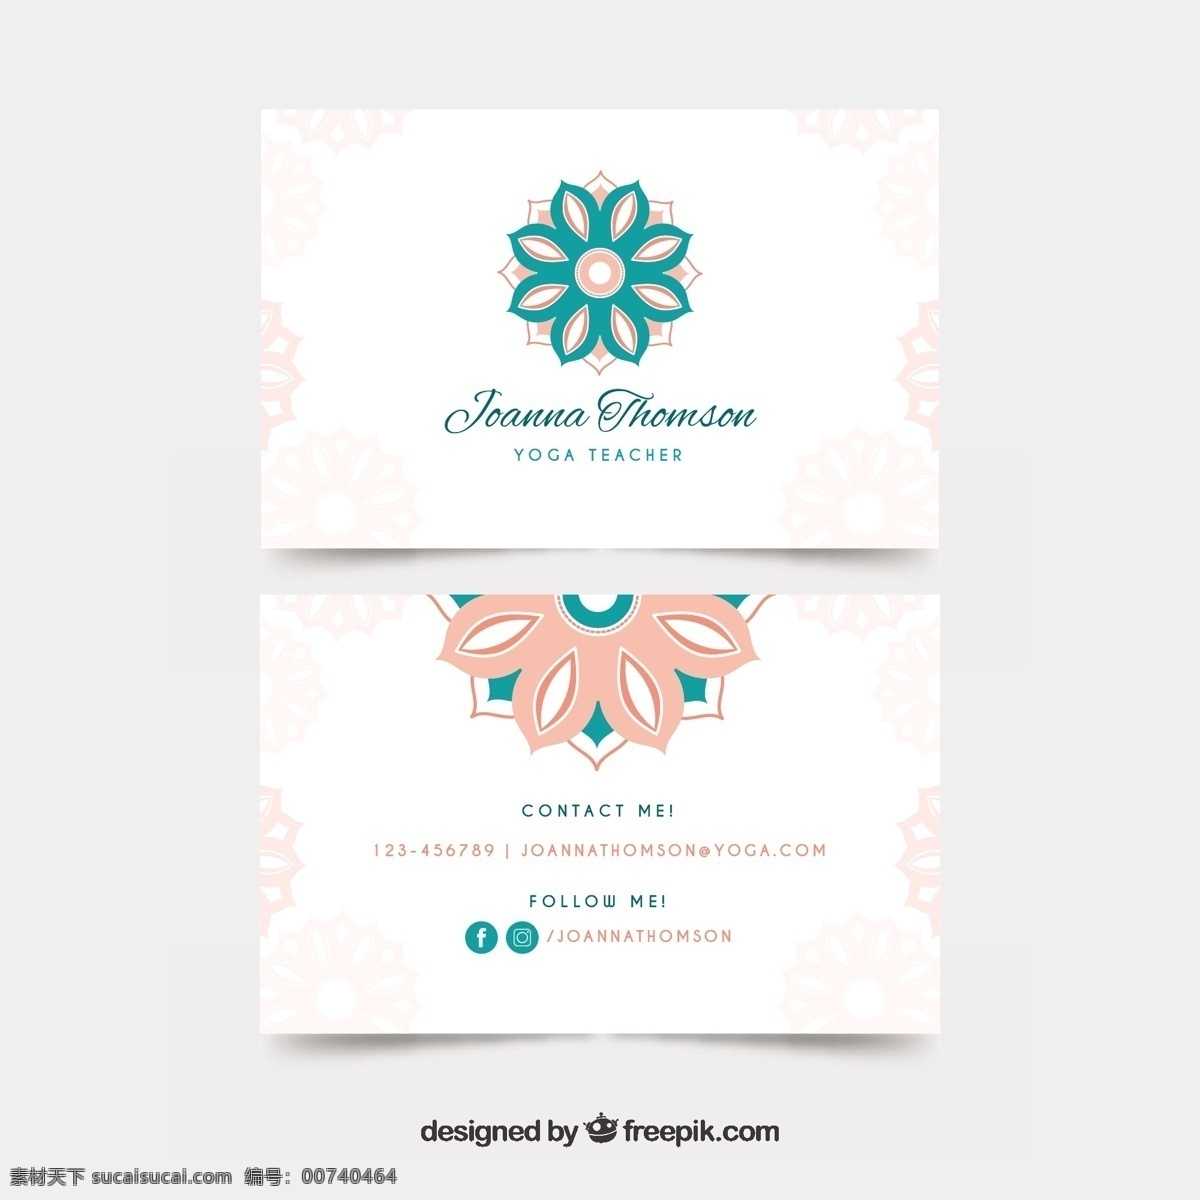 名片 粉彩 曼荼罗 商标 花卉 商业 抽象 卡片 装饰 模板 办公室 曼陀罗 介绍 印度 形状 单位 公司